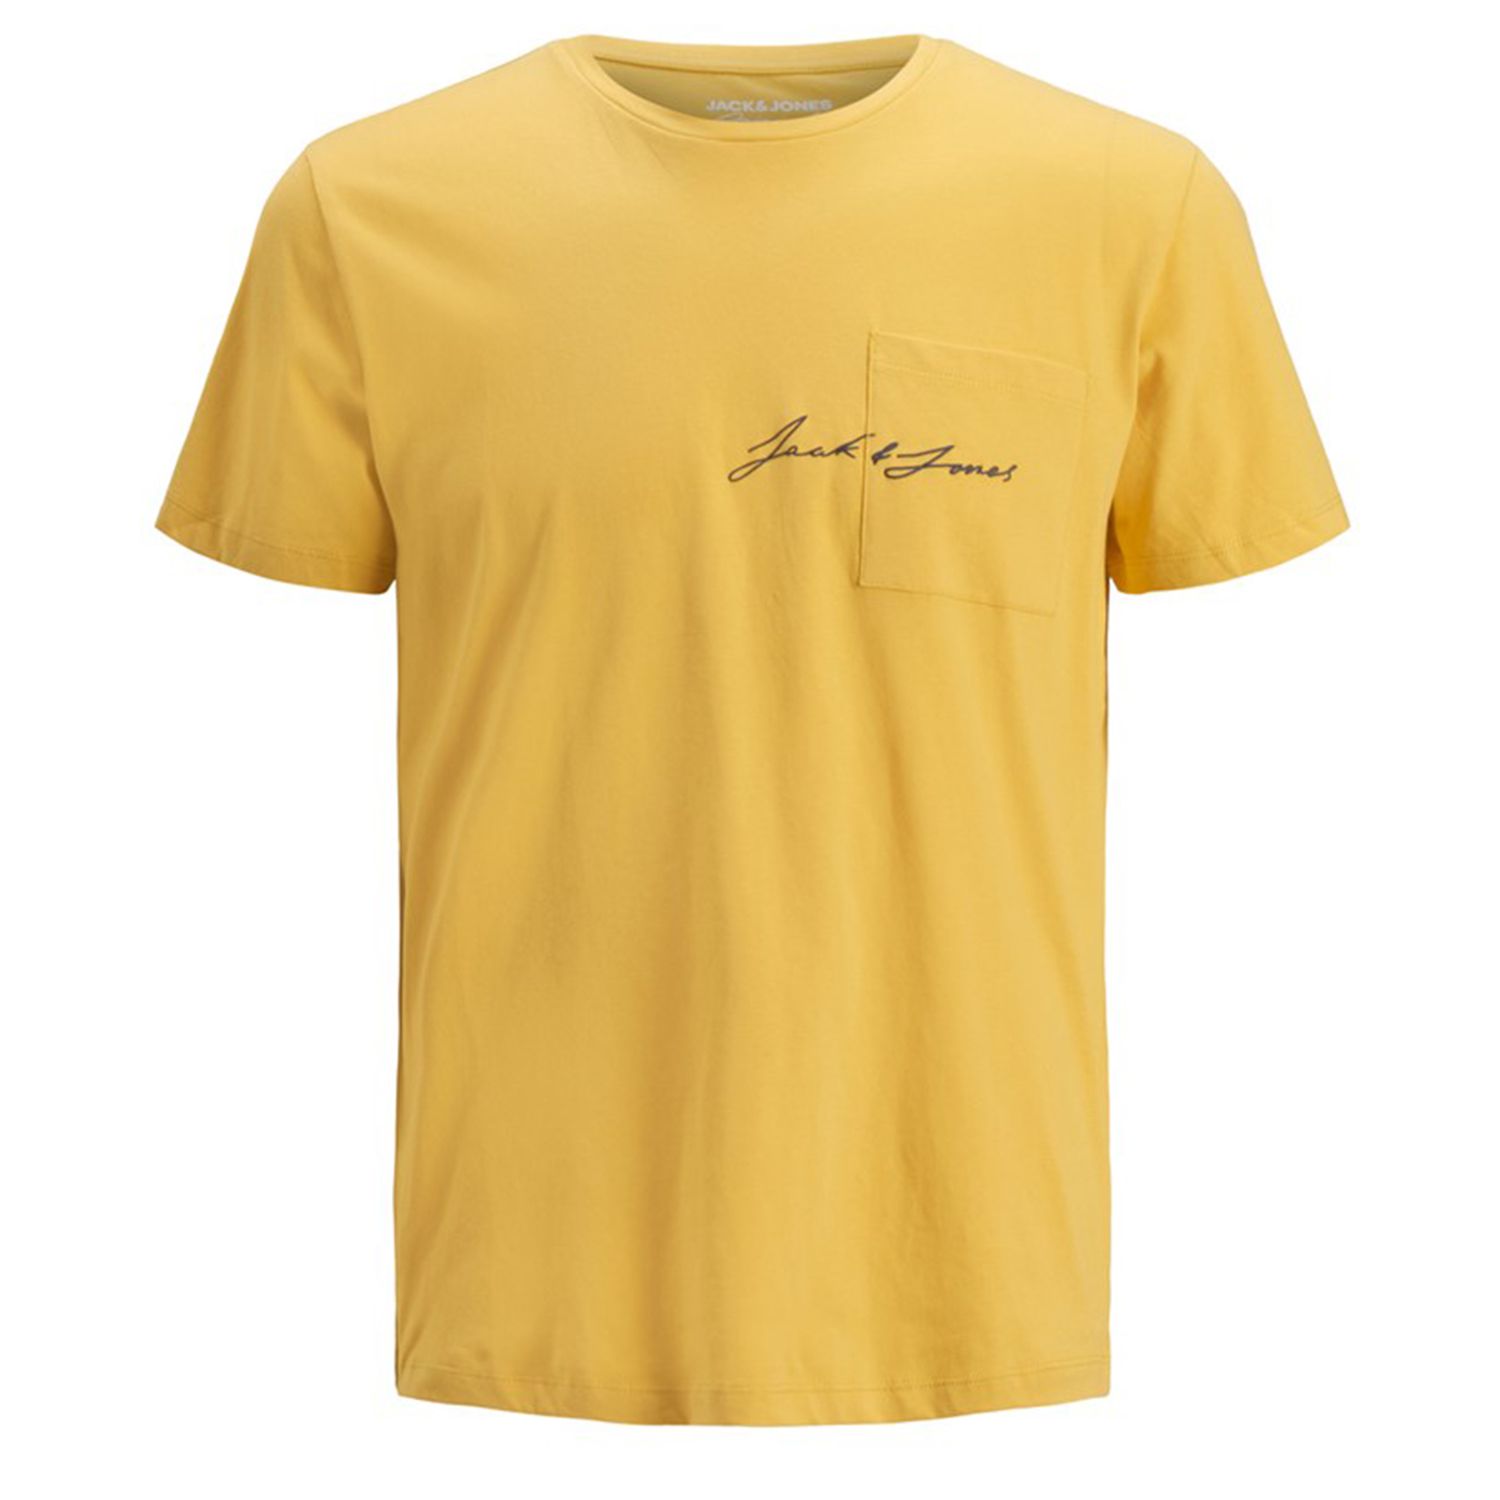 تی شرت آستین کوتاه مردانه جک اند جونز مدل ساده جیب دار کد Olympus12180662 رنگ زرد -  - 2